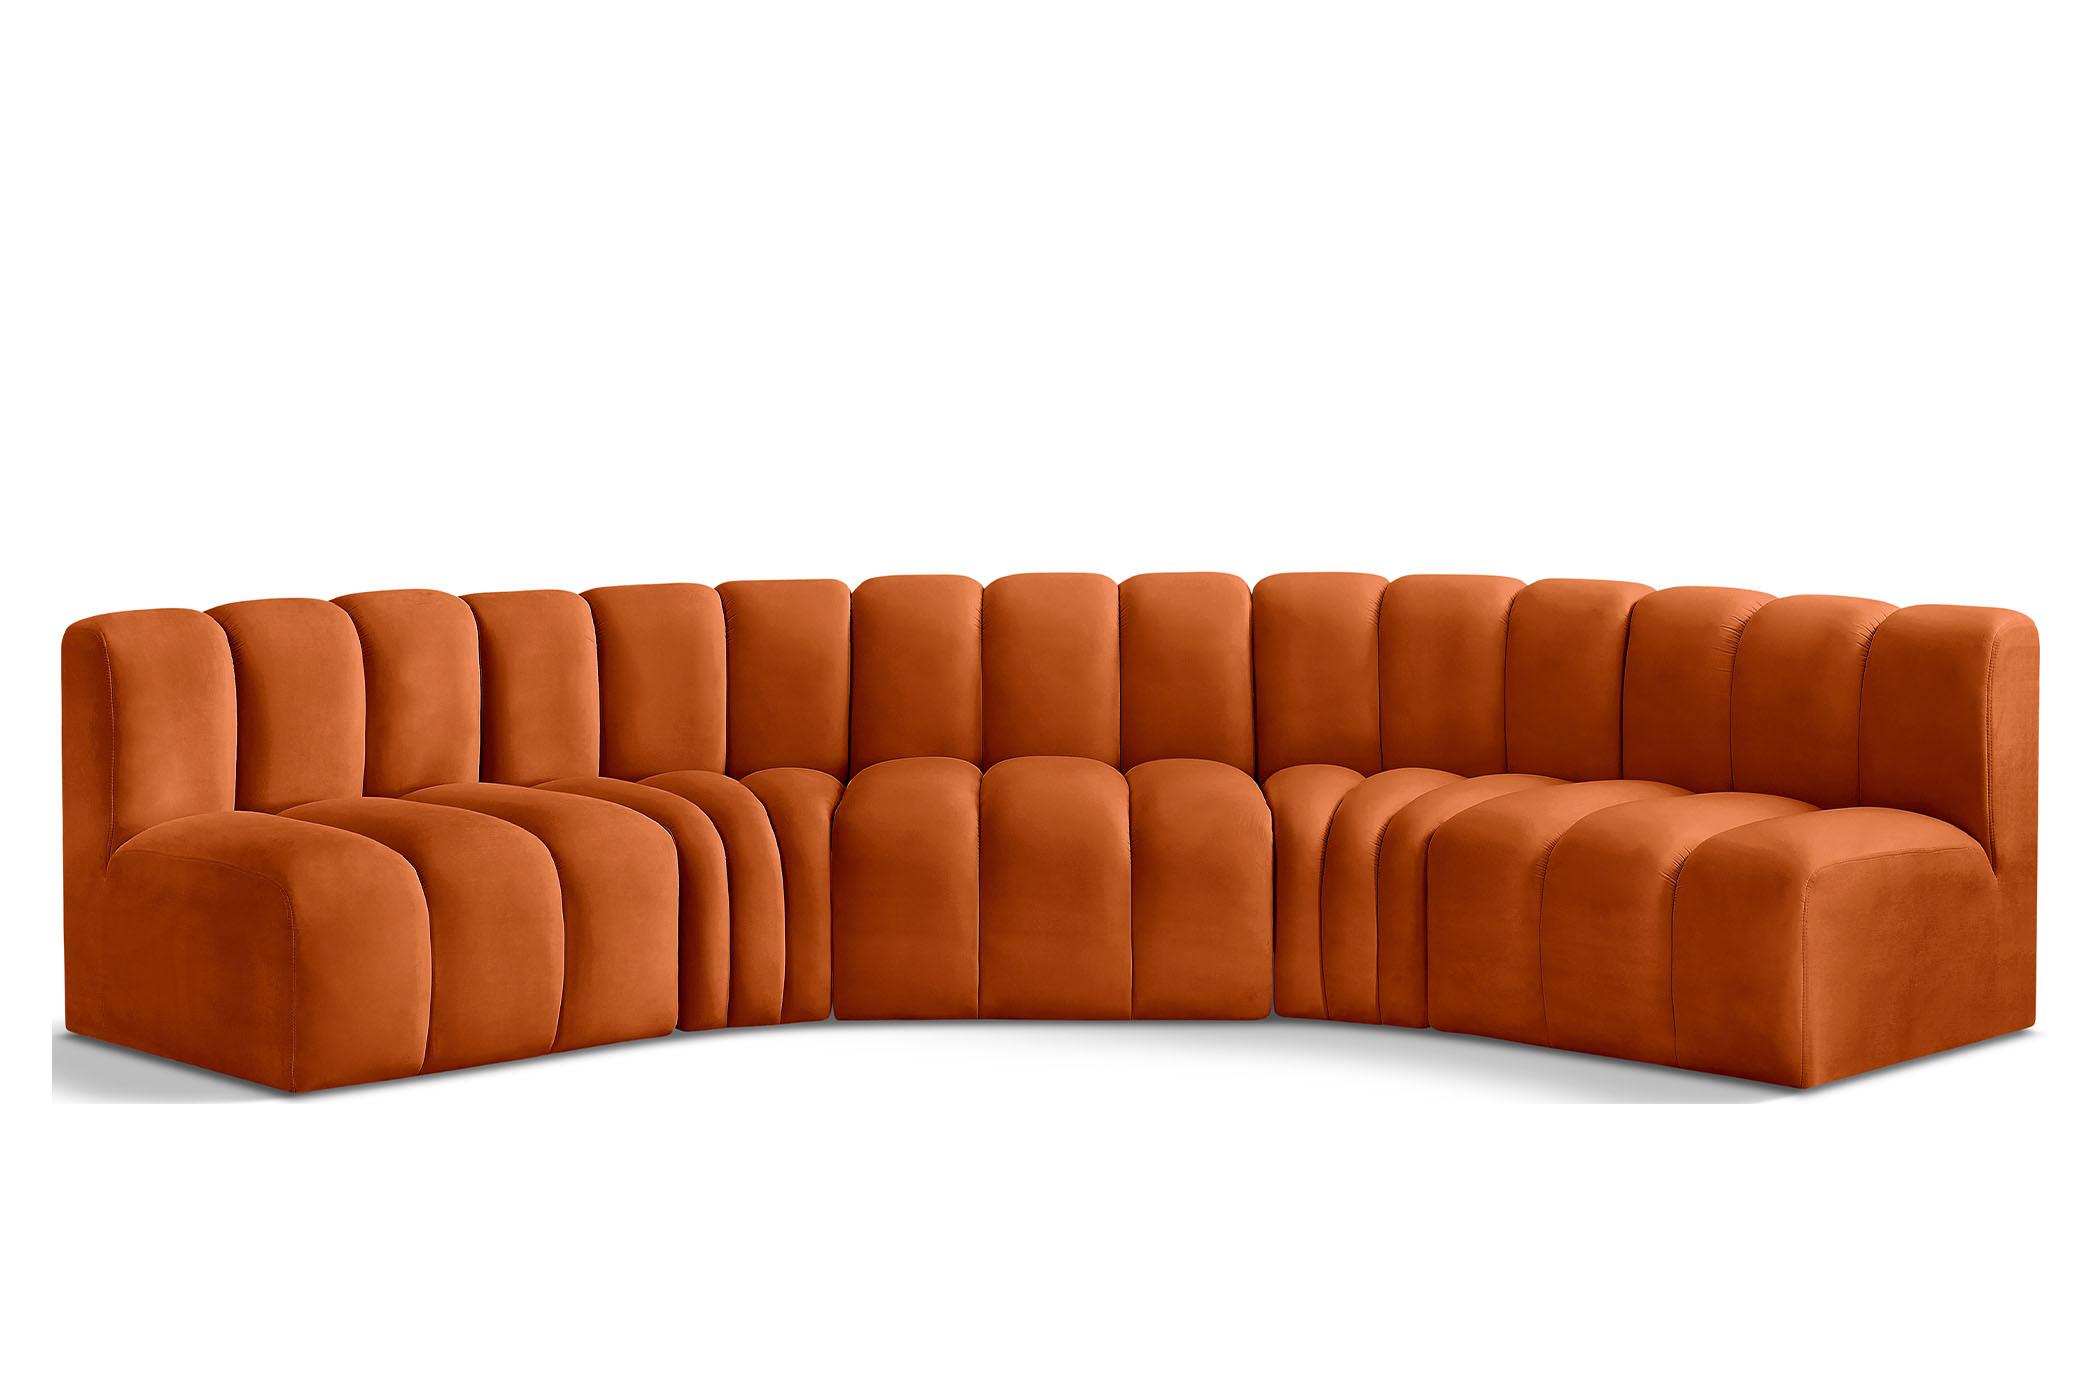 Contemporary, Modern Modular Sectional Sofa ARC 103Cognac-S5A 103Cognac-S5A in Cognac Velvet